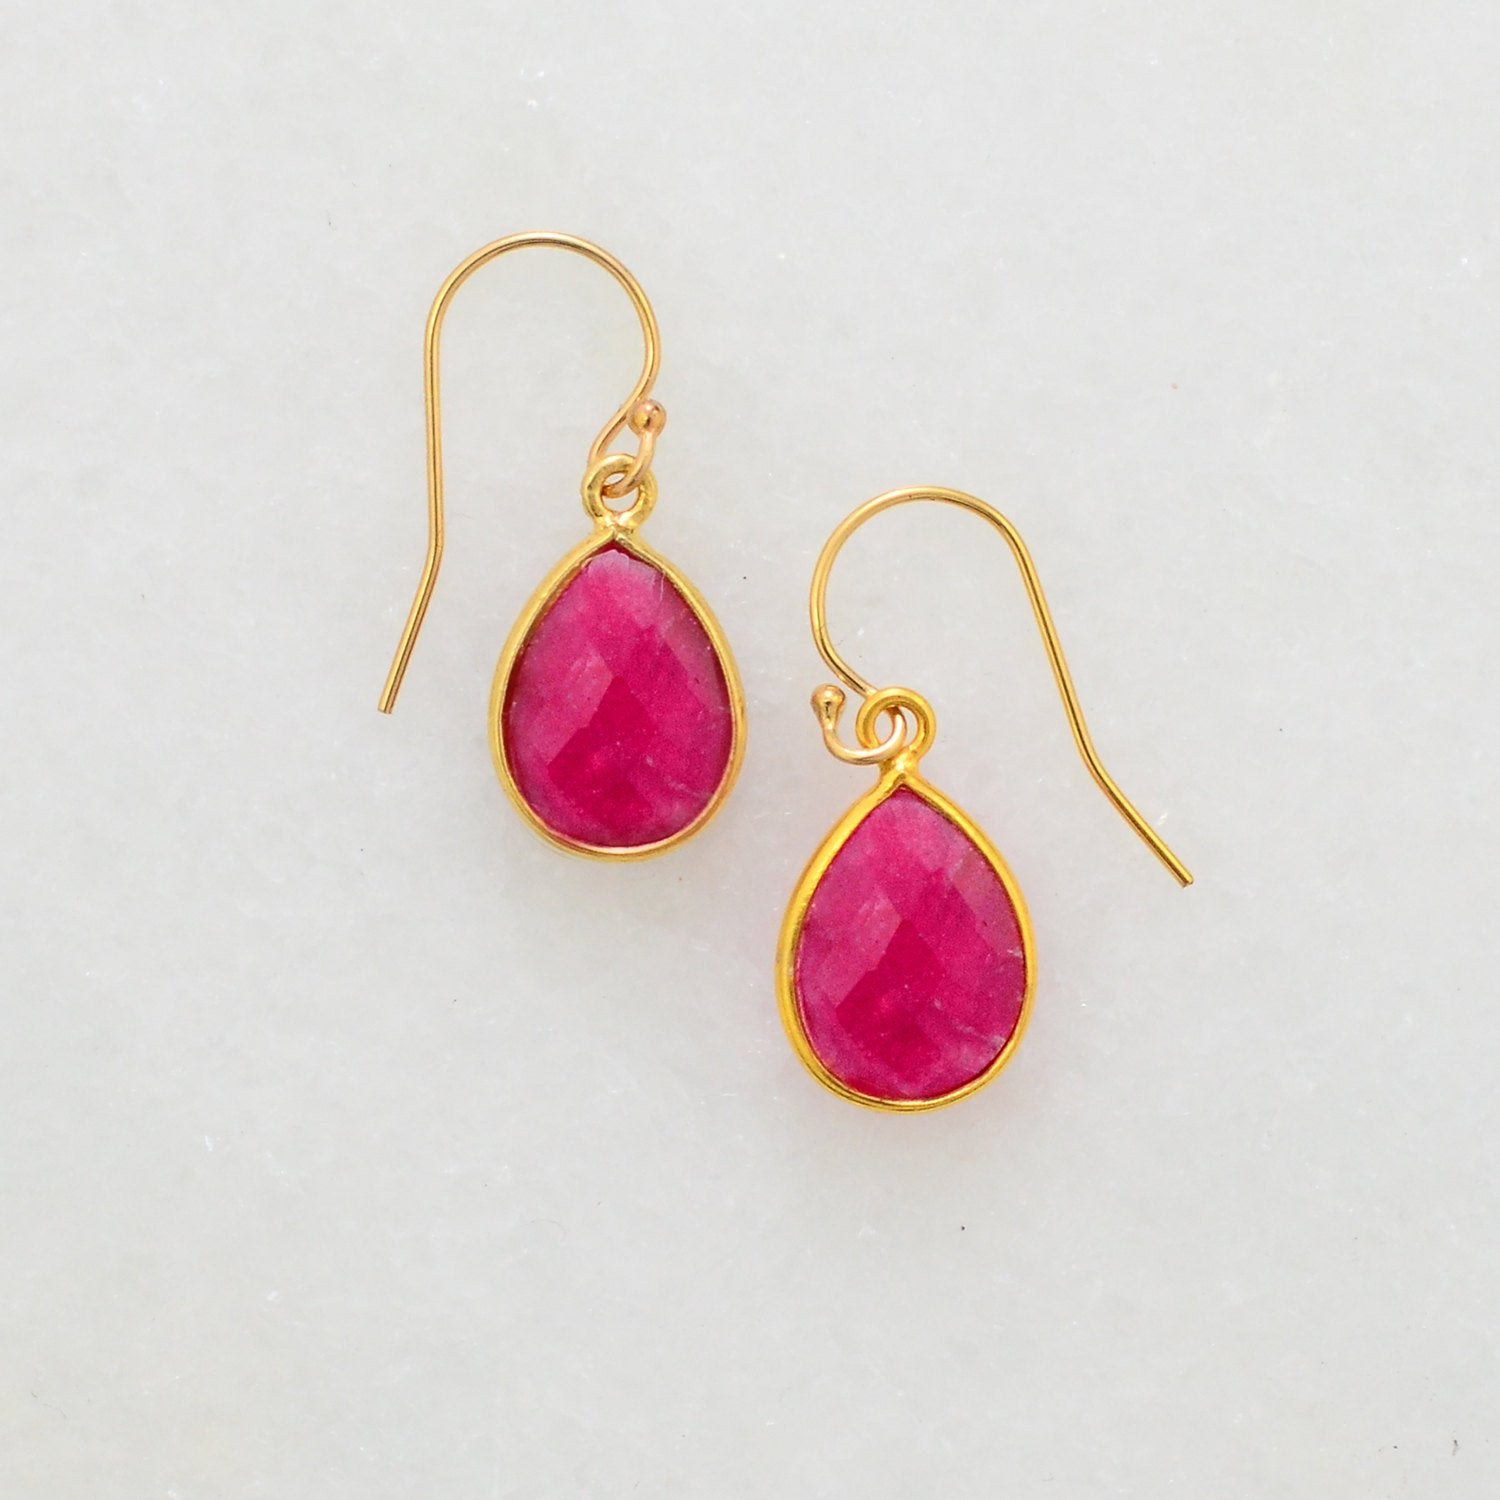 Ruby Gold Earring - Cute Delicate Earring - Wedding Jewelry - Minimal Earring - 925 Silver Earring - Dainty Earring - Small Drop Earring